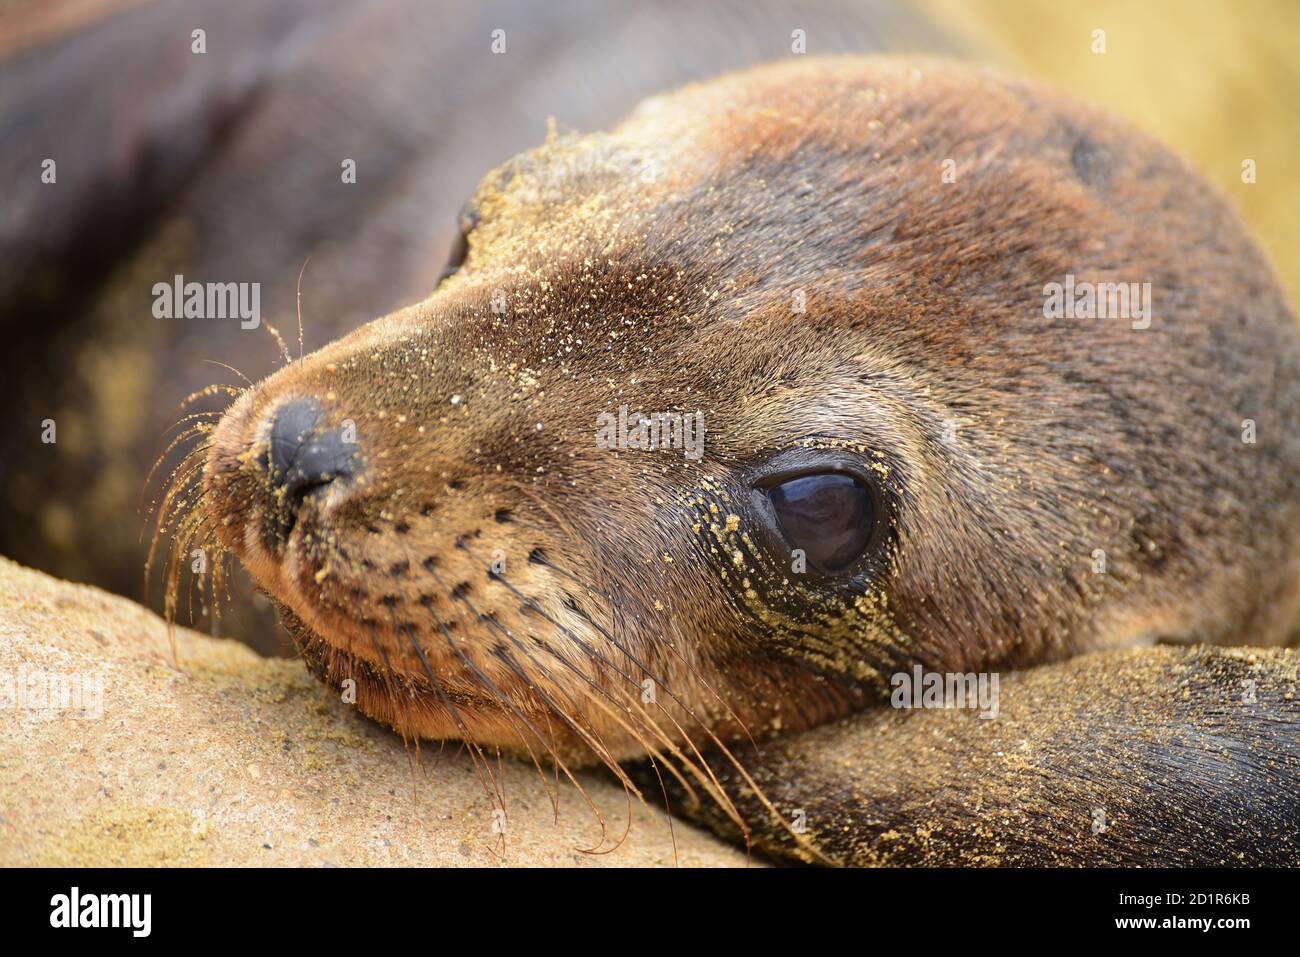 Portrait de la tête du lion de la mer de Galapagos (Zalophus wollebaeki). Îles Galapagos, Équateur Banque D'Images